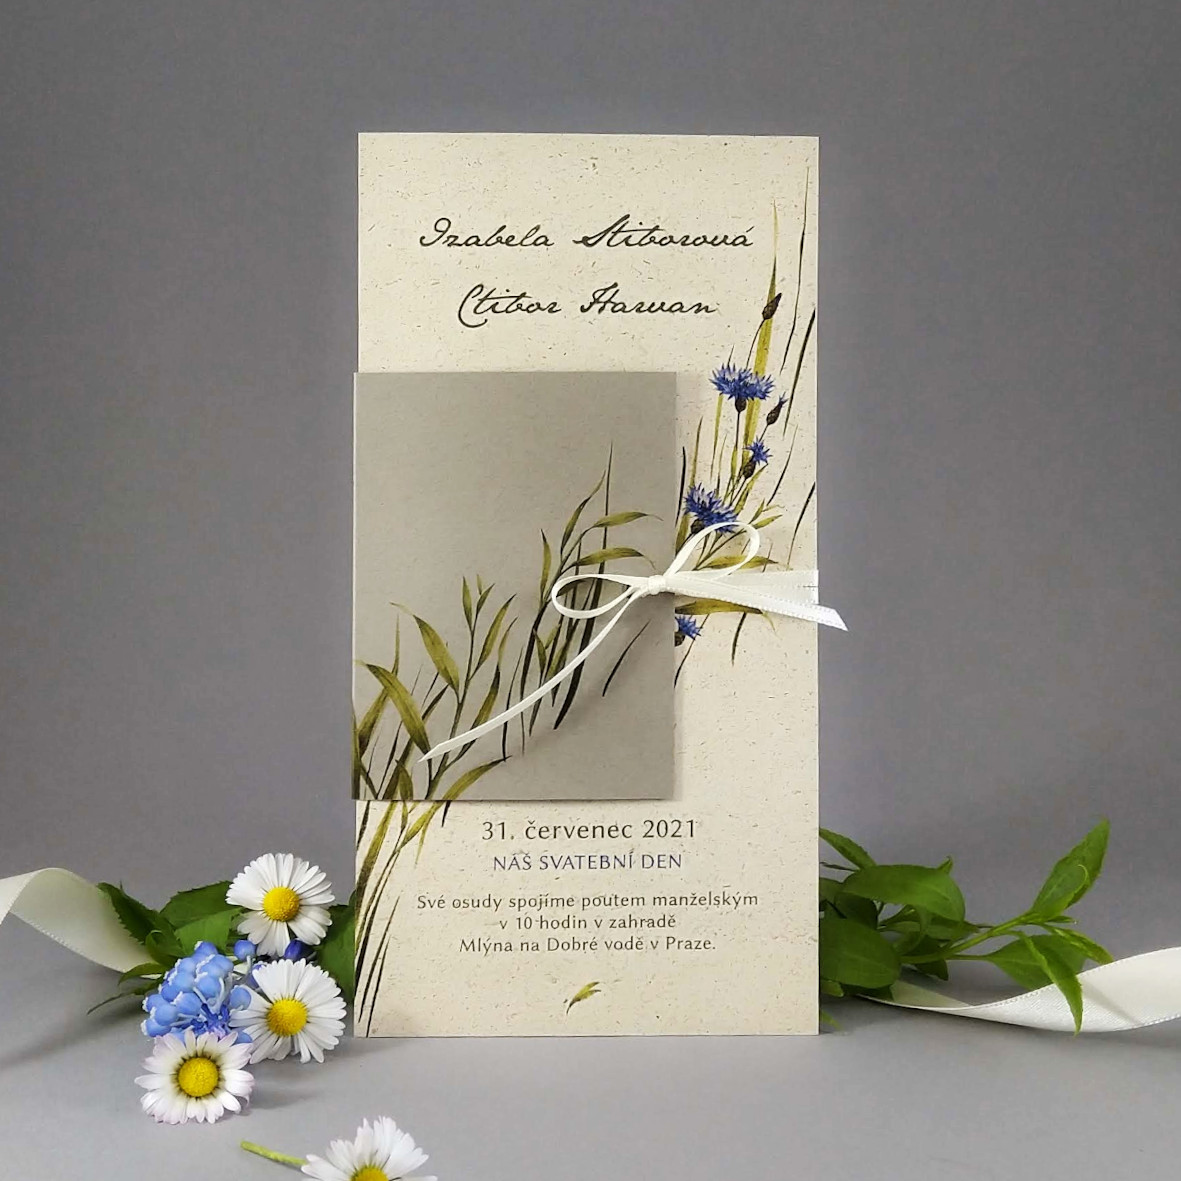 Svatební oznámení – DL karta s přebalem z papírů s příměsí suché trávy a bavlny s lučním motivem